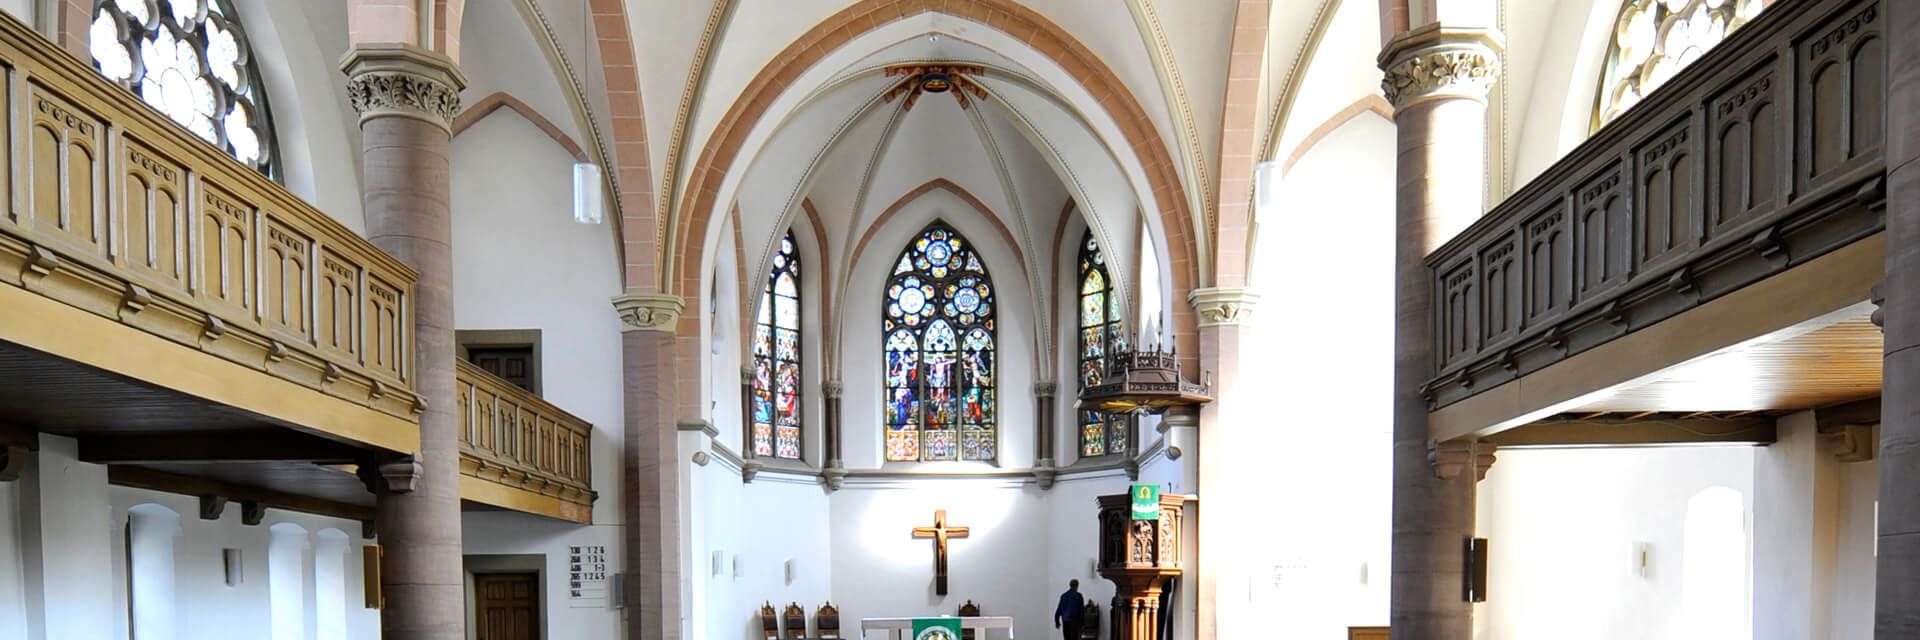 Innenansicht der Martin-Luther-Kirche in Detmold mit Blick zum Altar